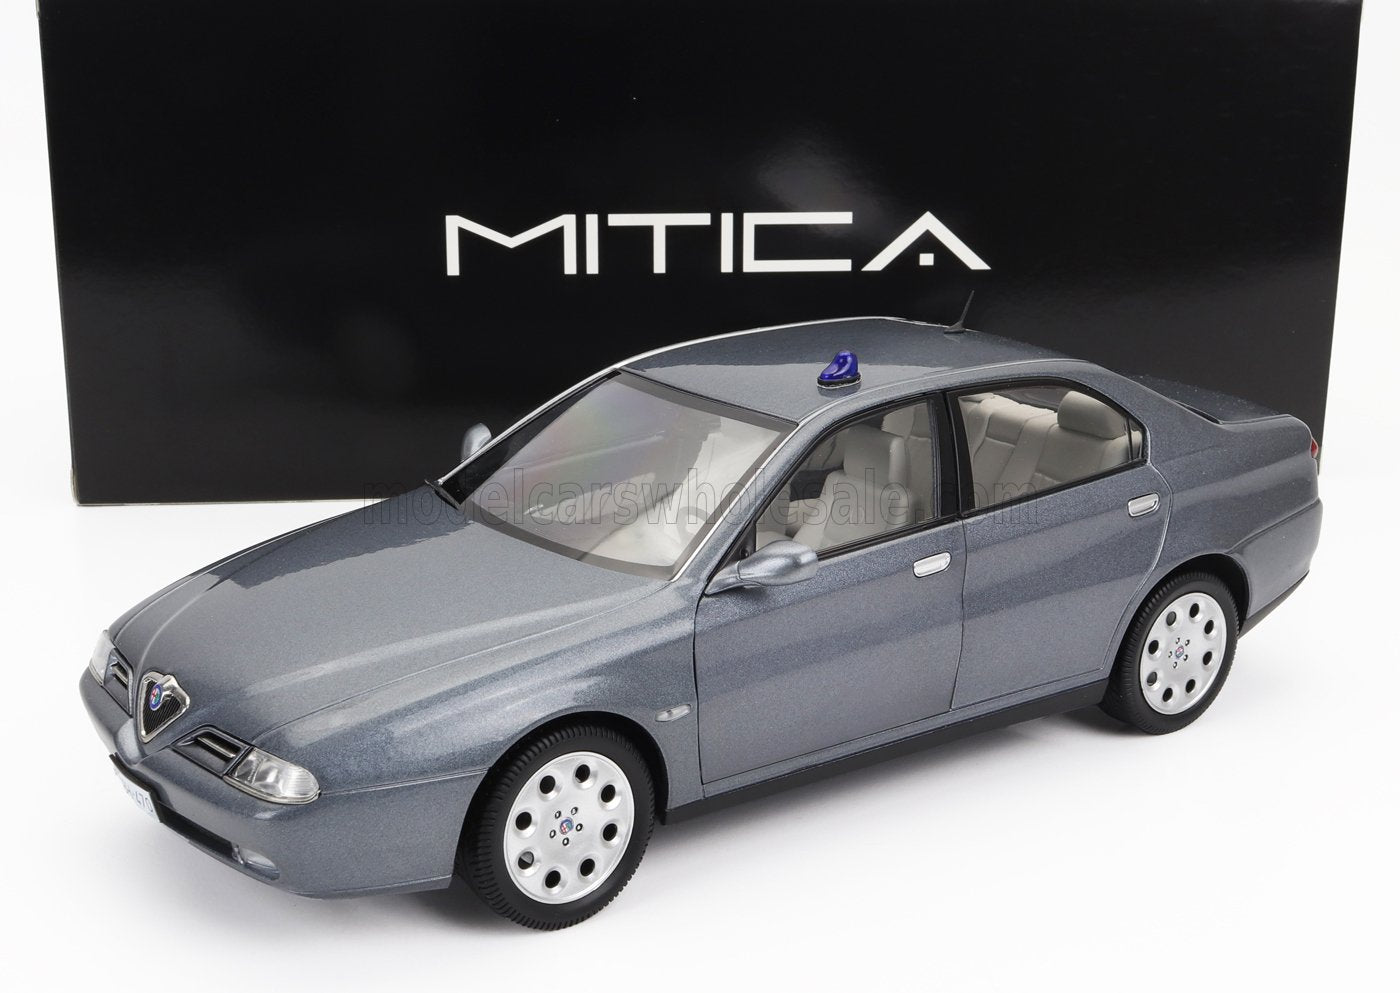 1/18 MITICA-DIECAST ALFA ROMEO - 166 3.0 V6 1998